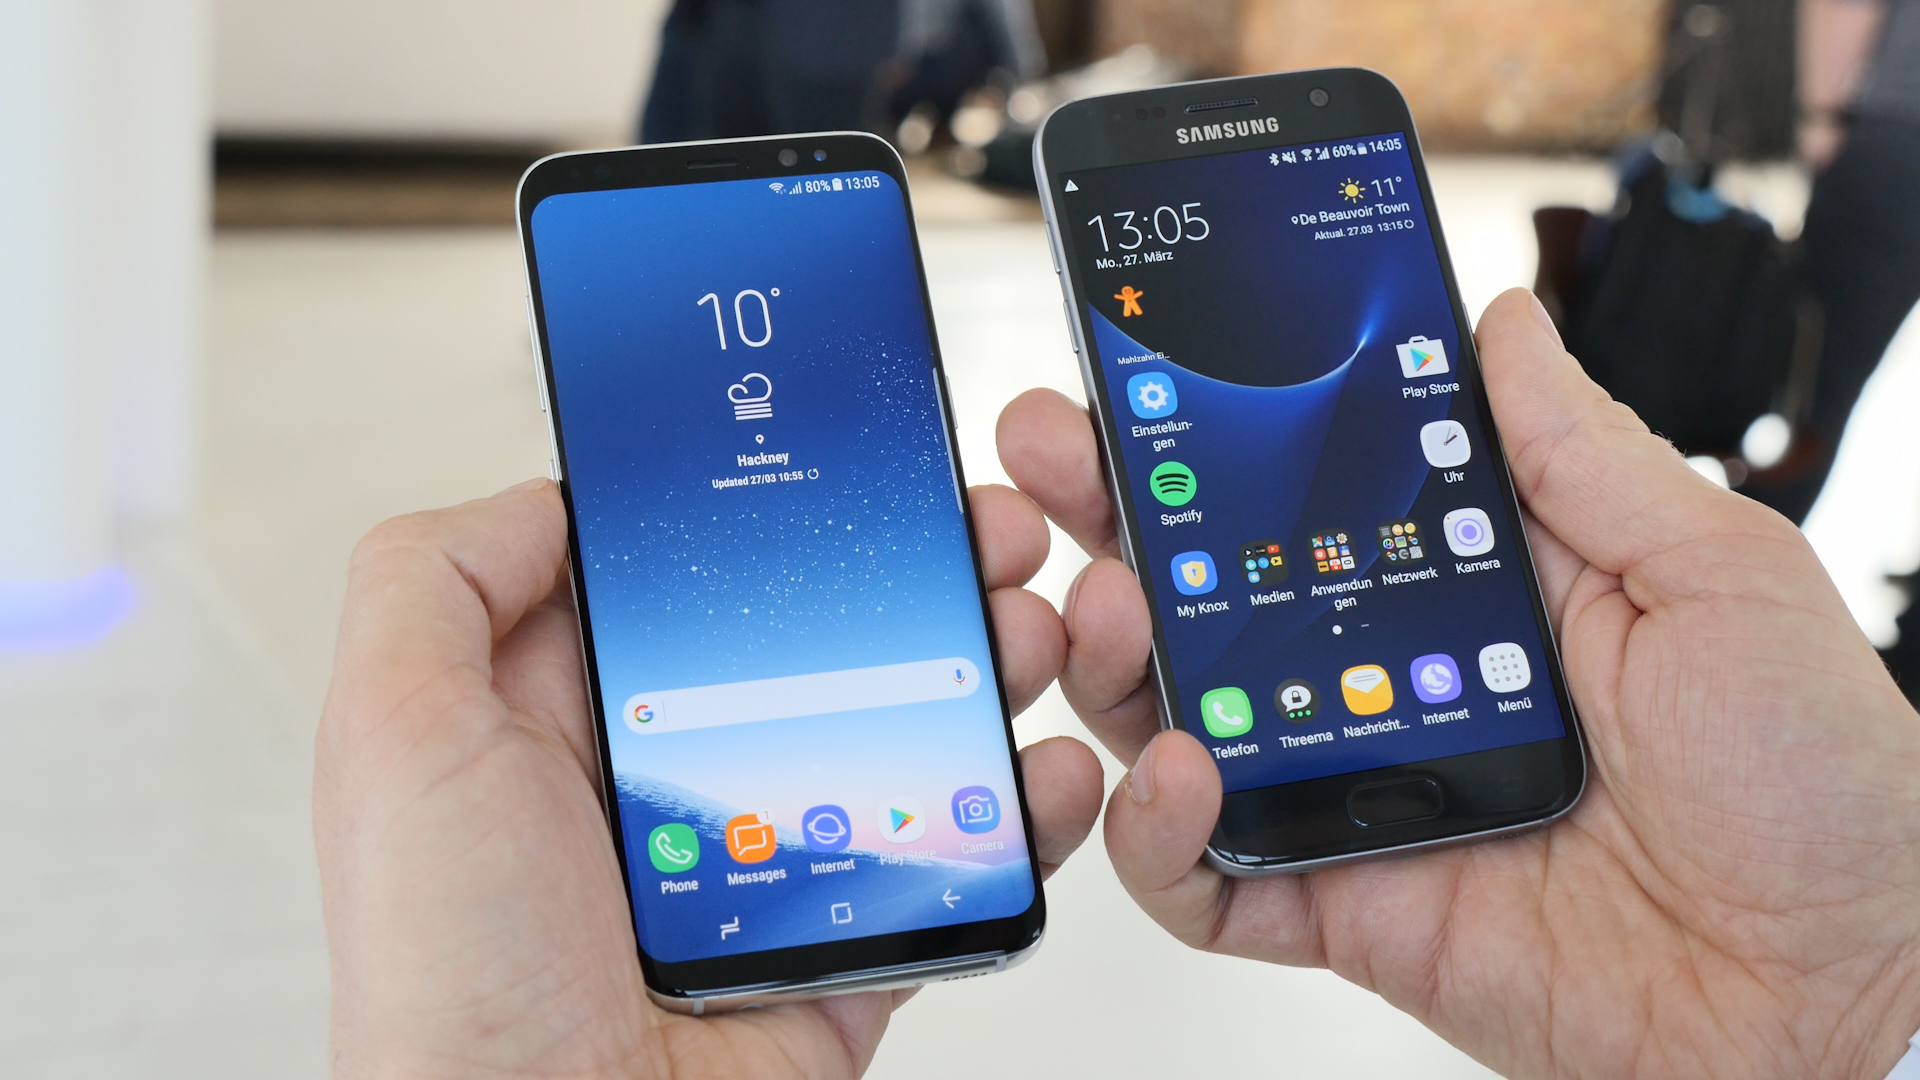 Samsung-Telefone S7, S8 + und Note 4